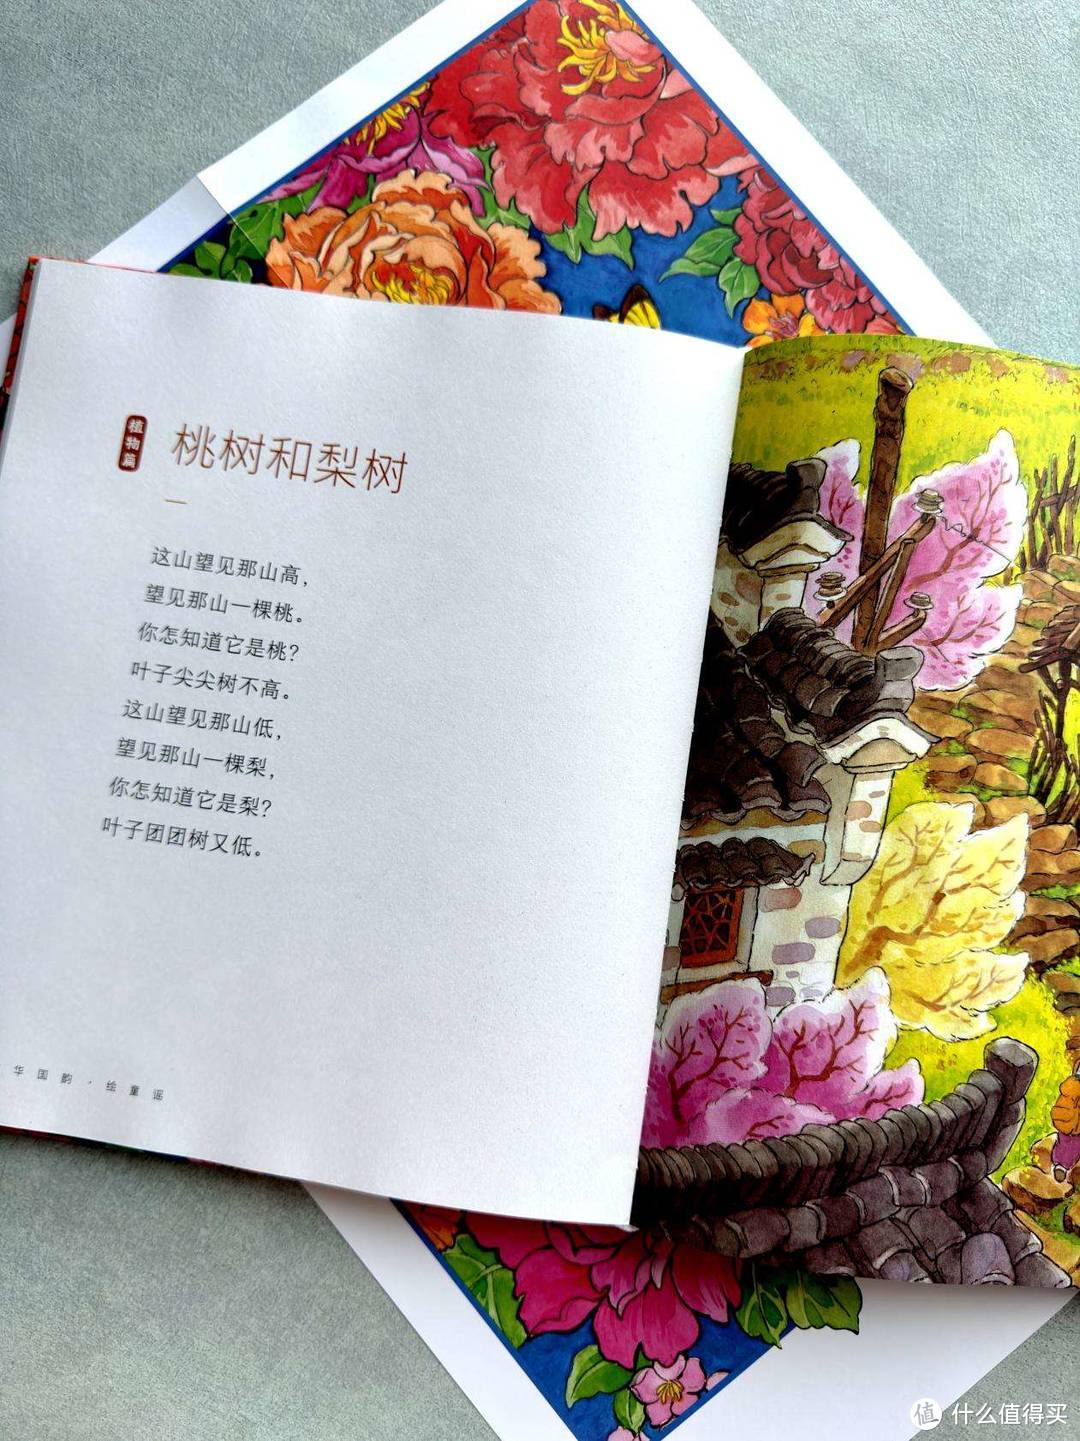 绘本「中华国韵绘童谣」可以提高小孩子的审美，来看一看精美的手绘